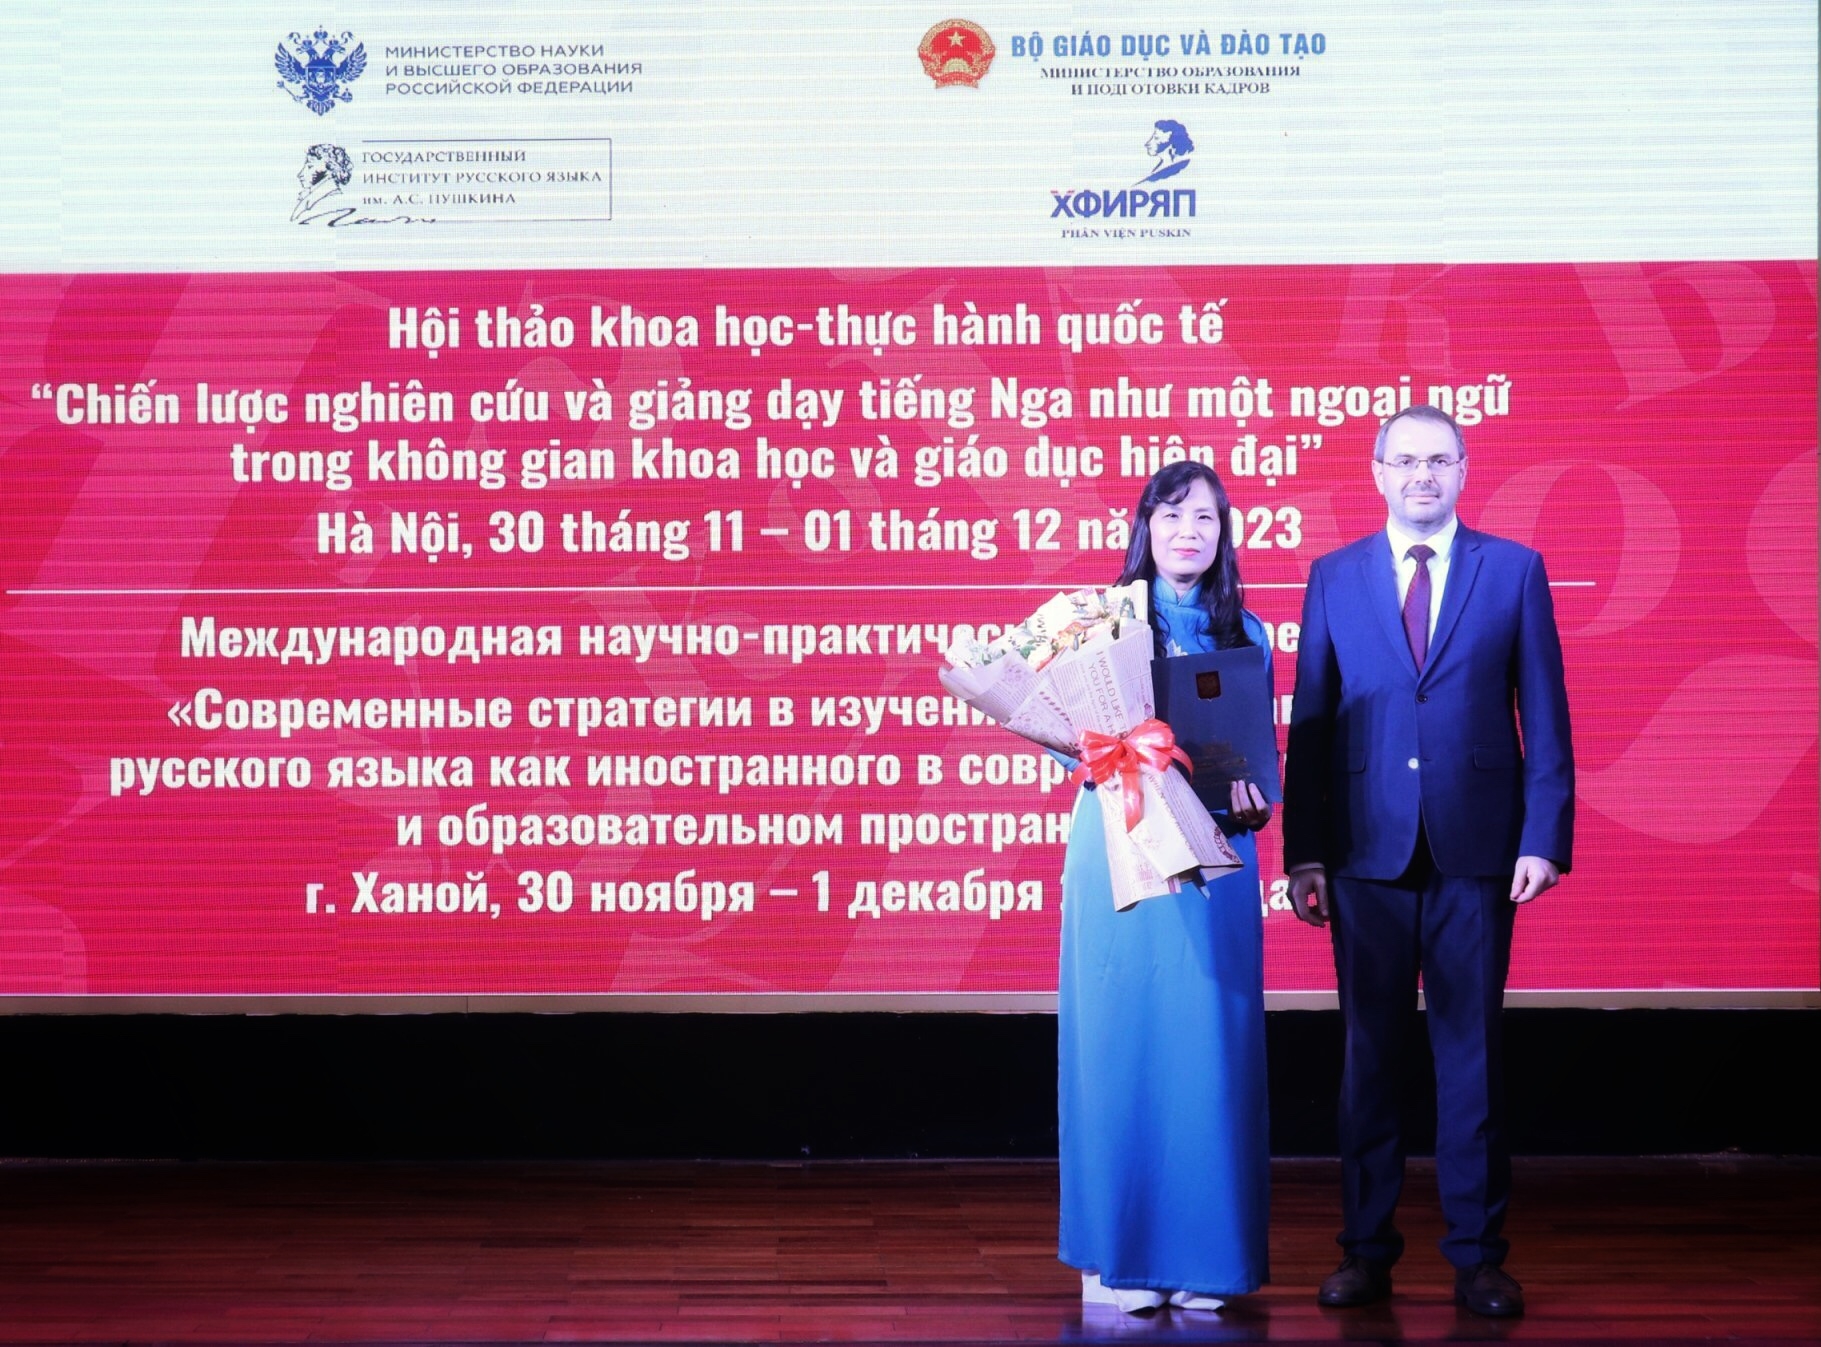 ХФИРЯП - базовое учебное заведение по распространению и популяризации русского языка во Вьетнаме